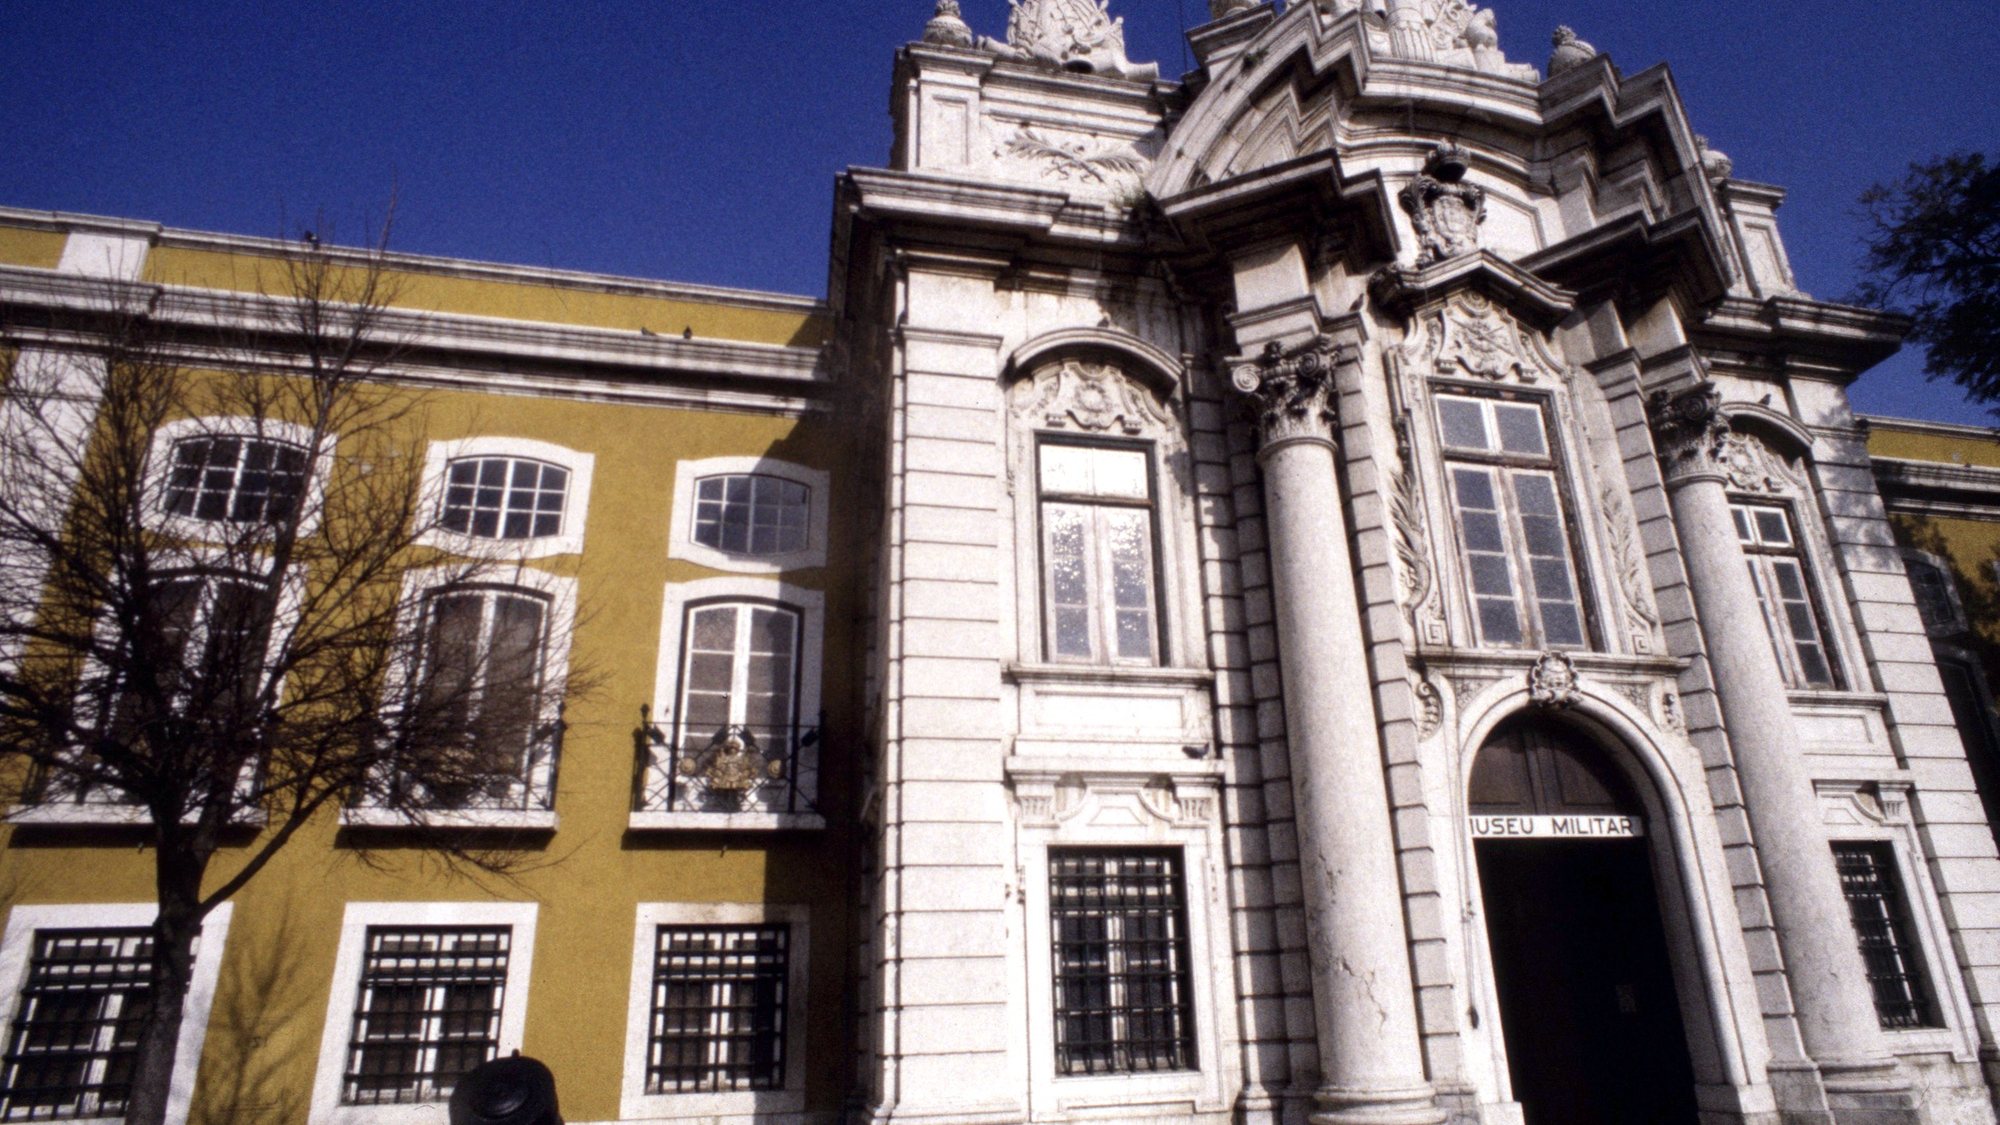 Fachada do Museu Militar de Lisboa a 22 de janeiro de 1992.

Lusa